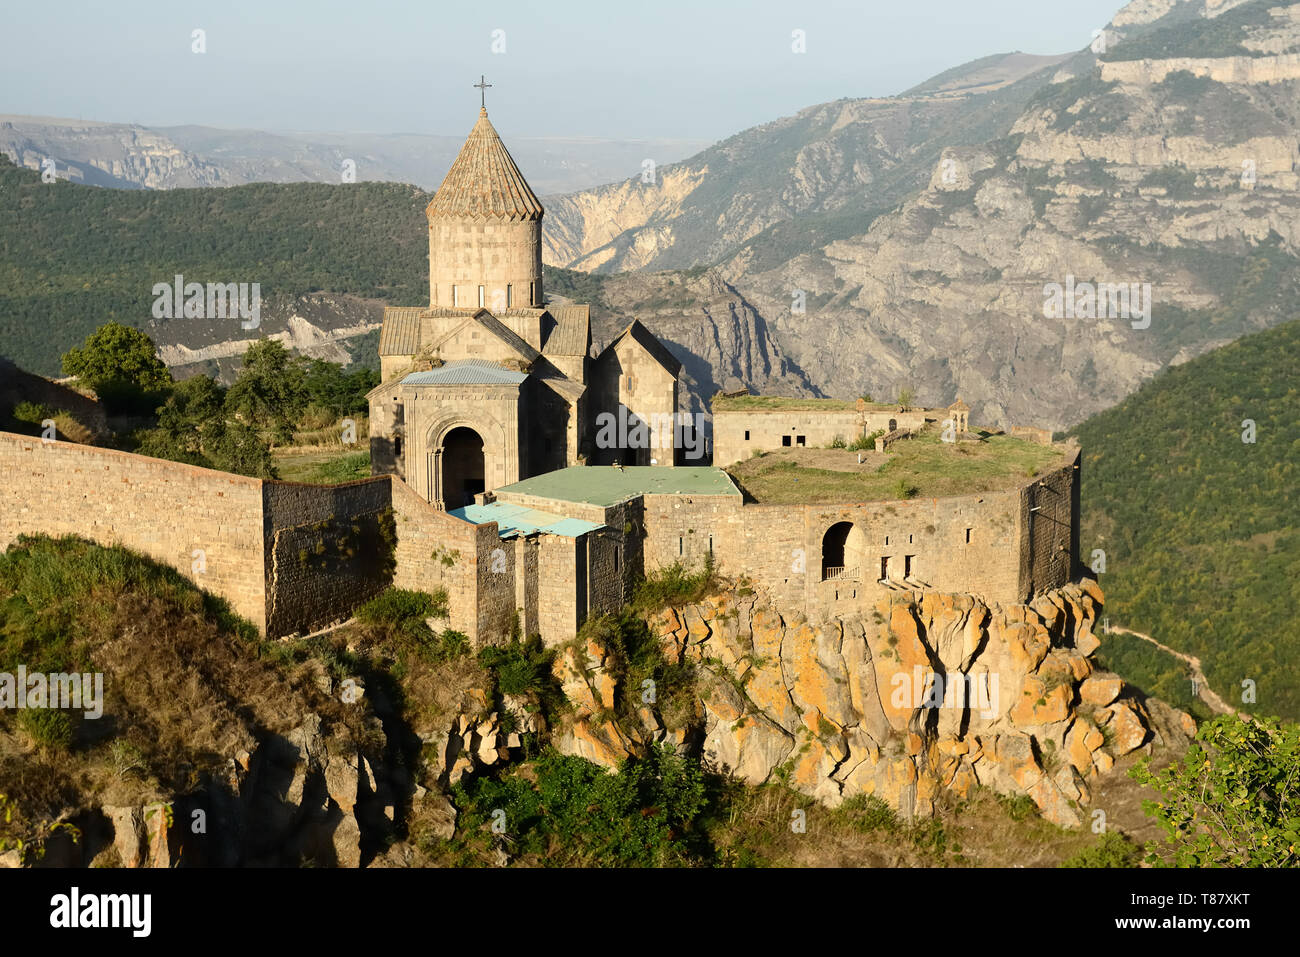 Es un monasterio Tatev IX siglo. Es uno de los más antiguos y famosos monasterio complejos en Armenia. Foto de stock